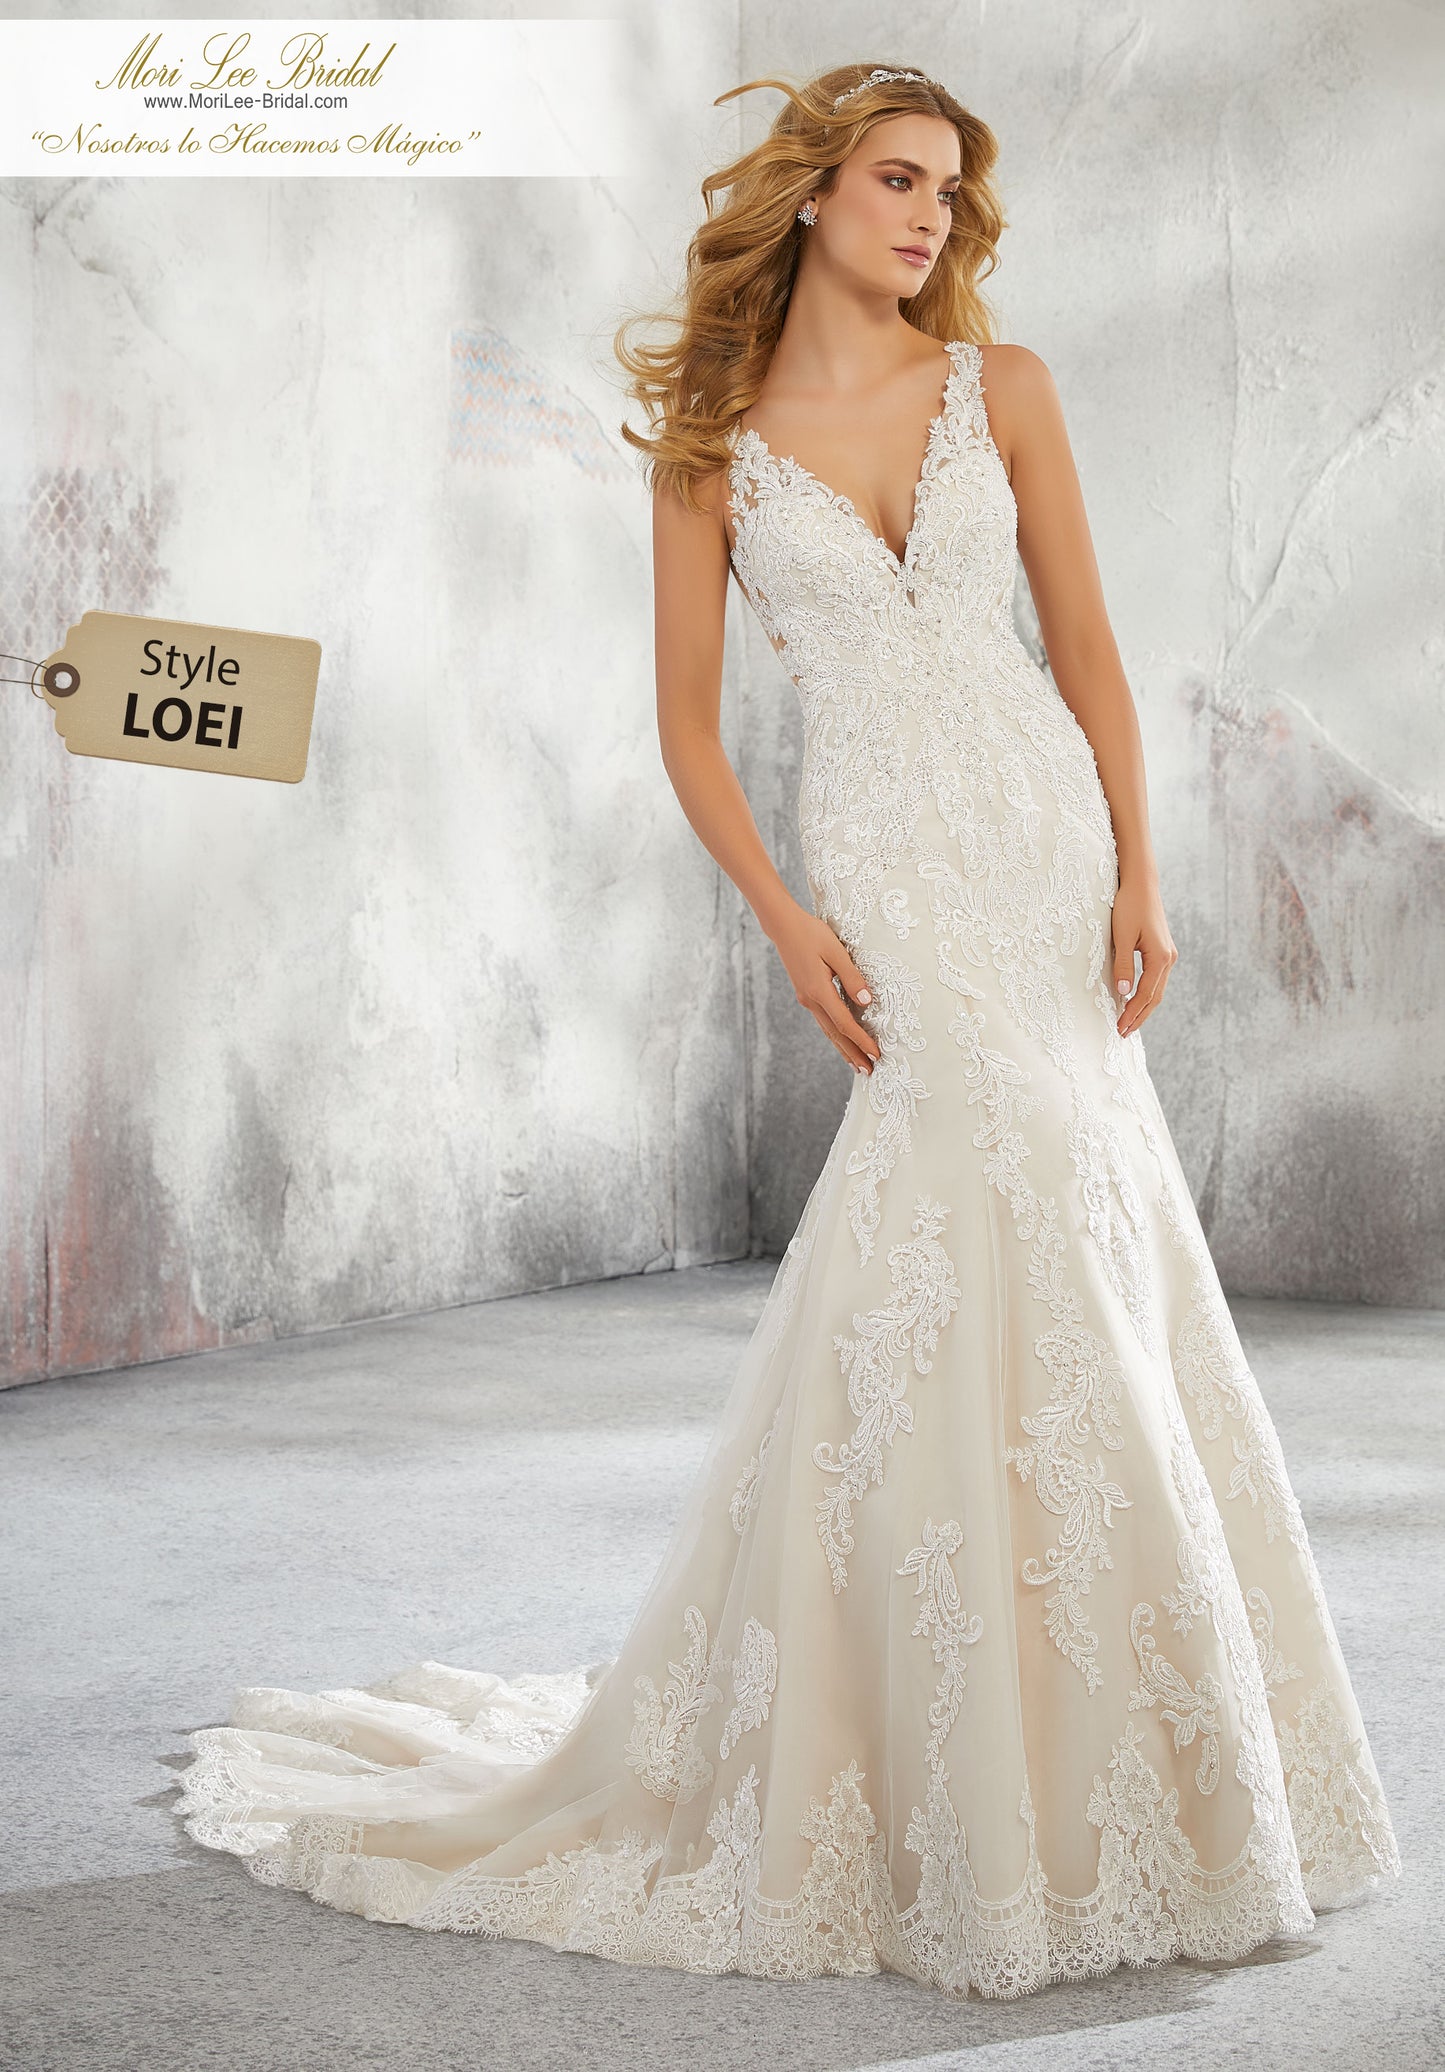 Vestido de novia con vuelo y corte clásico con aplicaciones de encaje de Alençon con pedrería en la red y una impresionante espalda ilusión. LOEI*